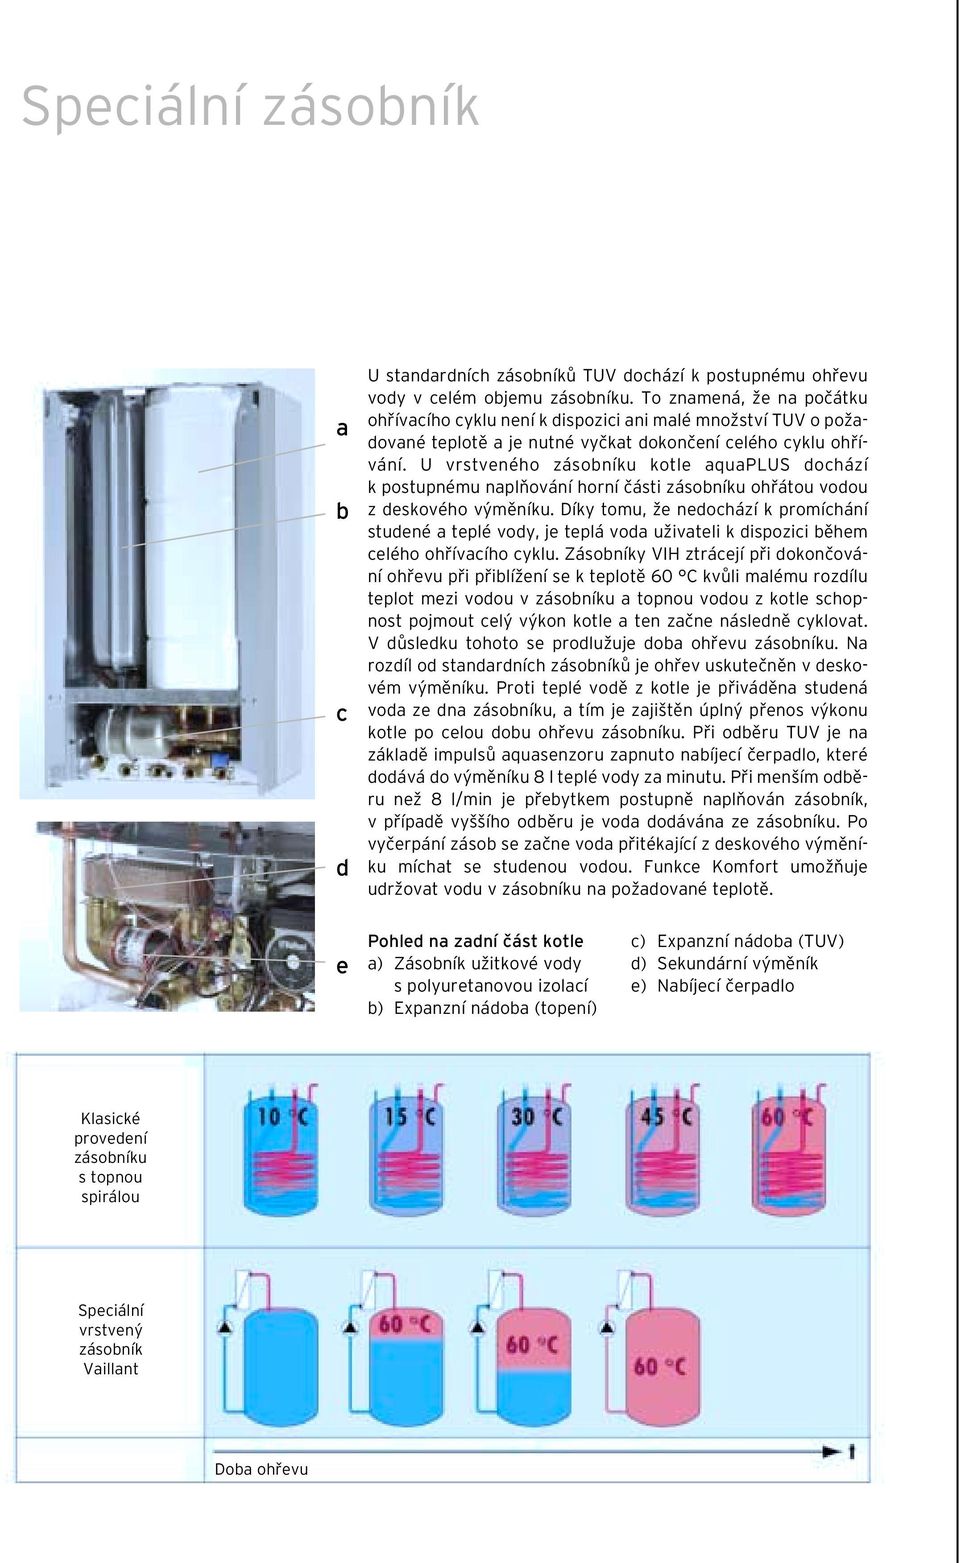 U vrstveného zásobníku kotle aquaplus dochází k postupnému naplňování horní části zásobníku ohřátou vodou z deskového výměníku.